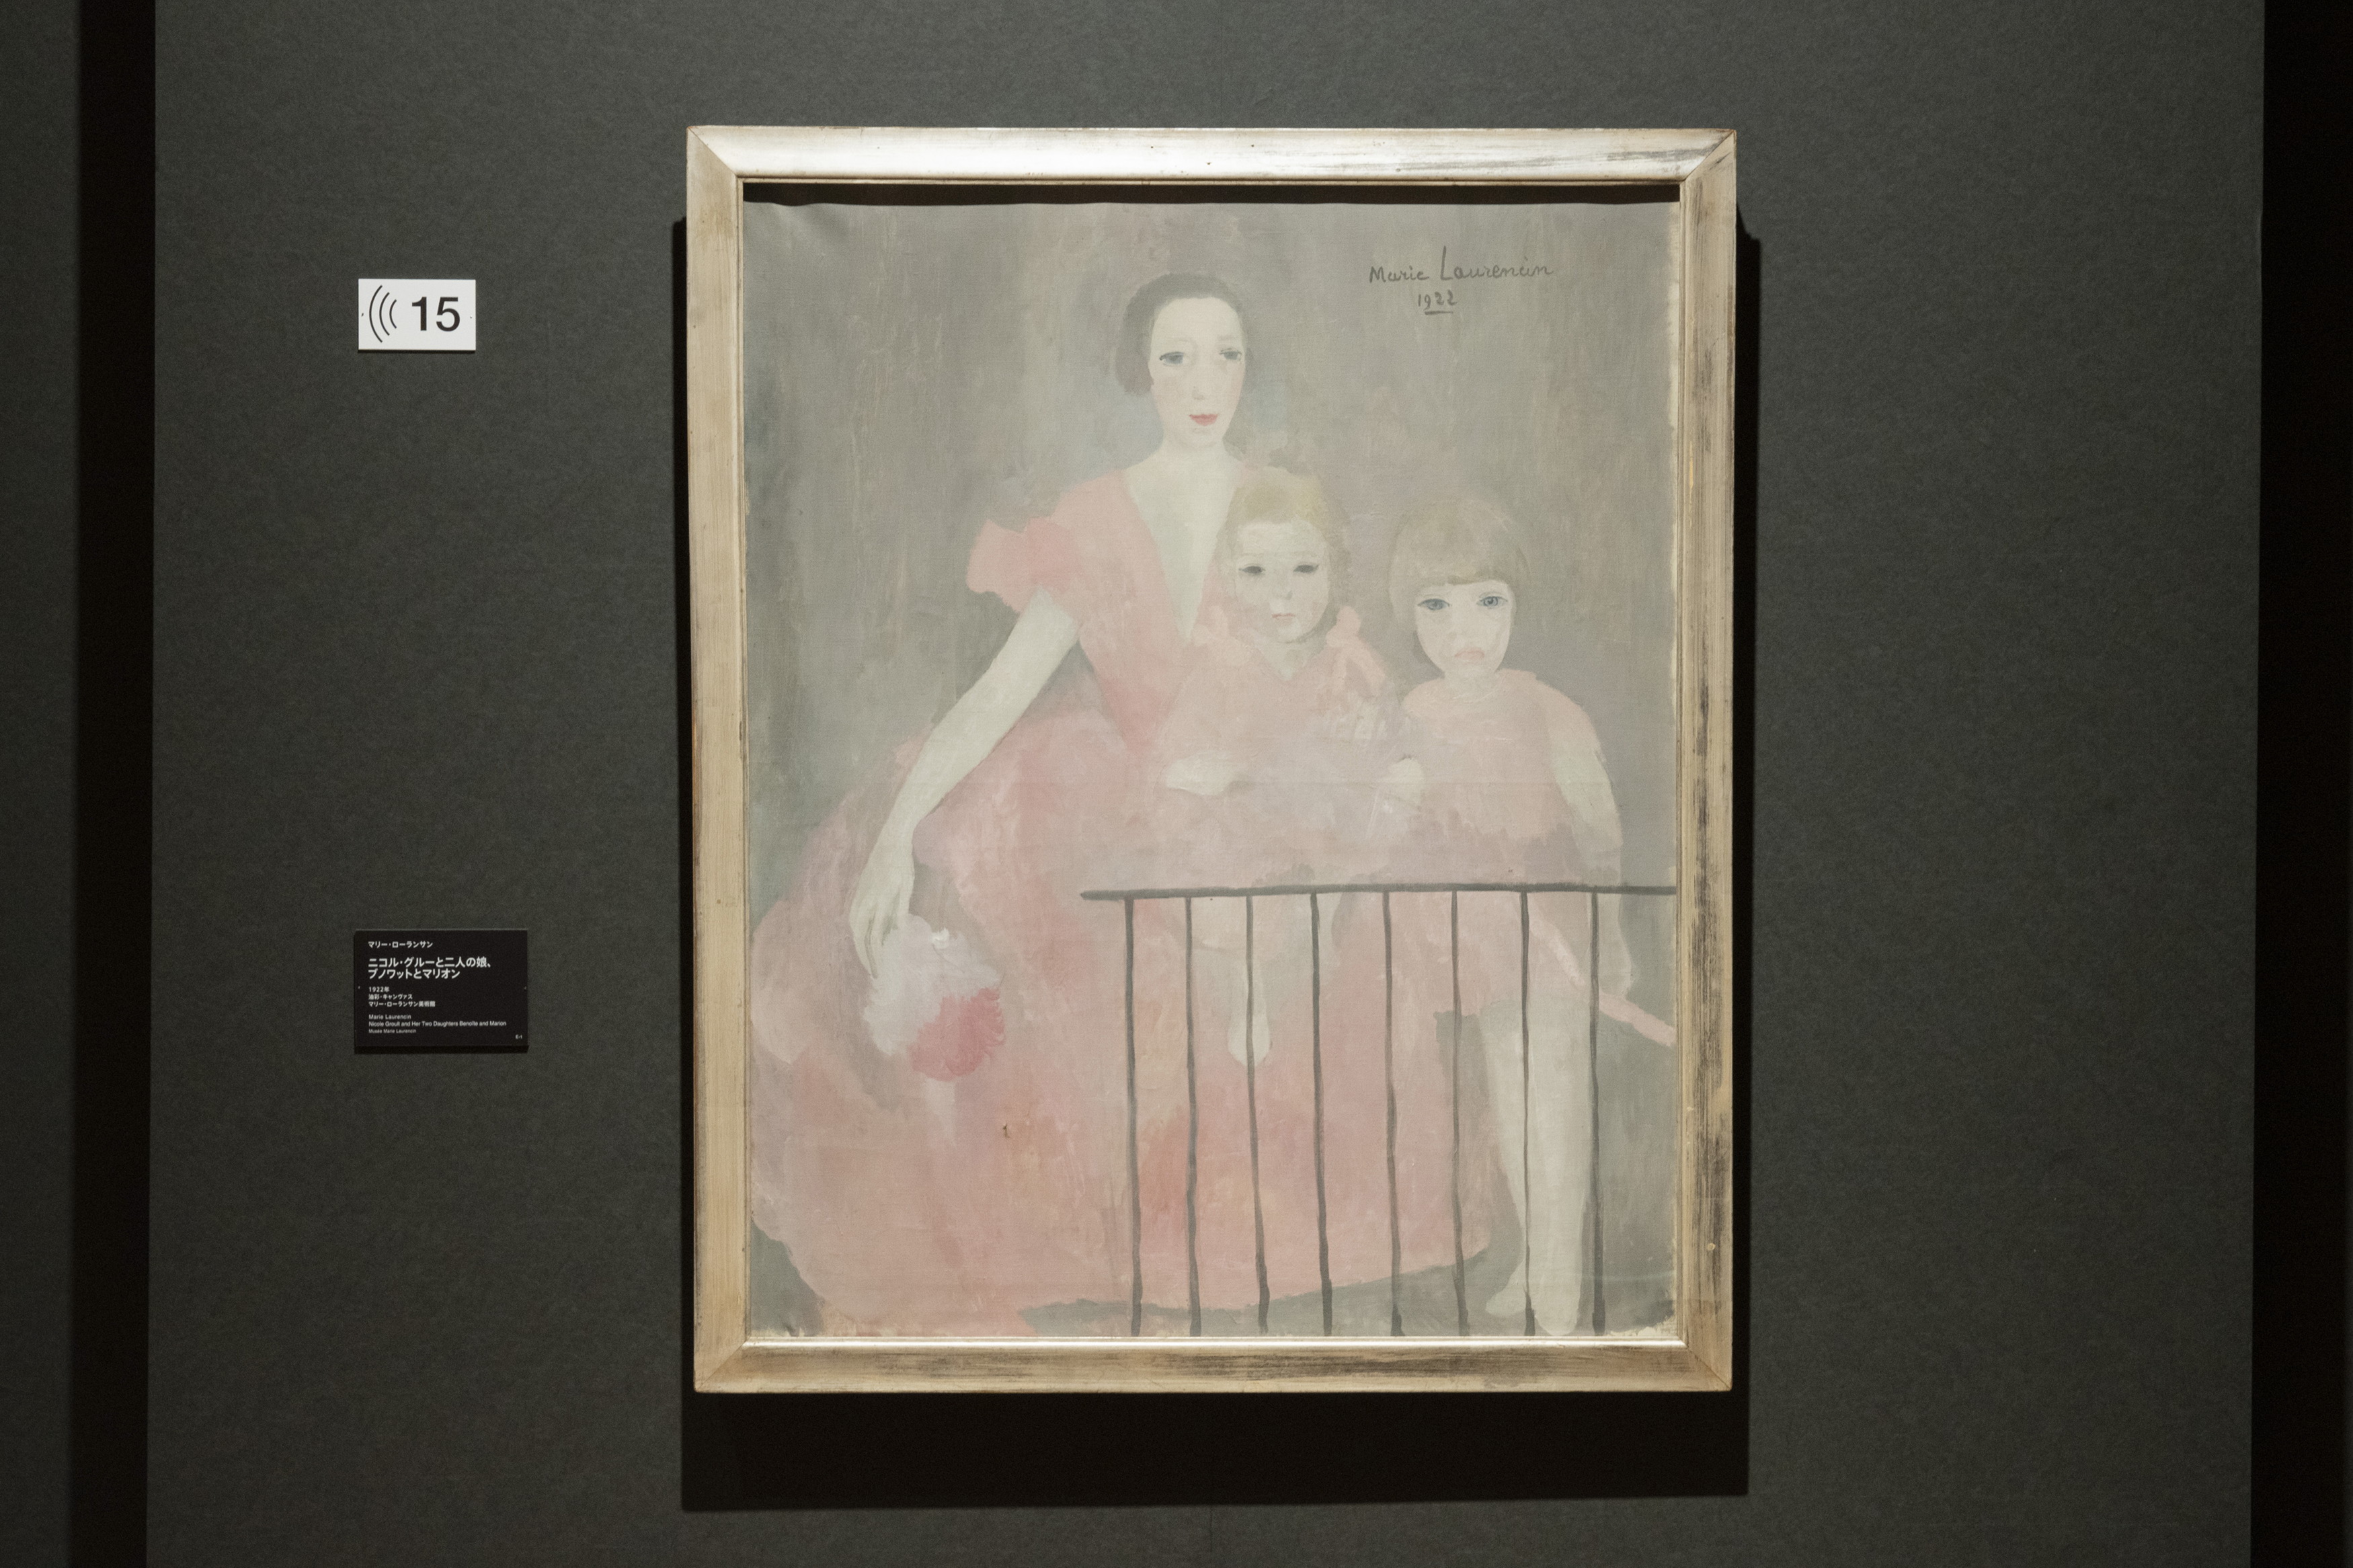 マリー・ローランサン 「ニコル・グルーと二人の娘、ブノワットとマリオン」1922年 油彩/キャンヴァス マリー・ローランサン美術館 